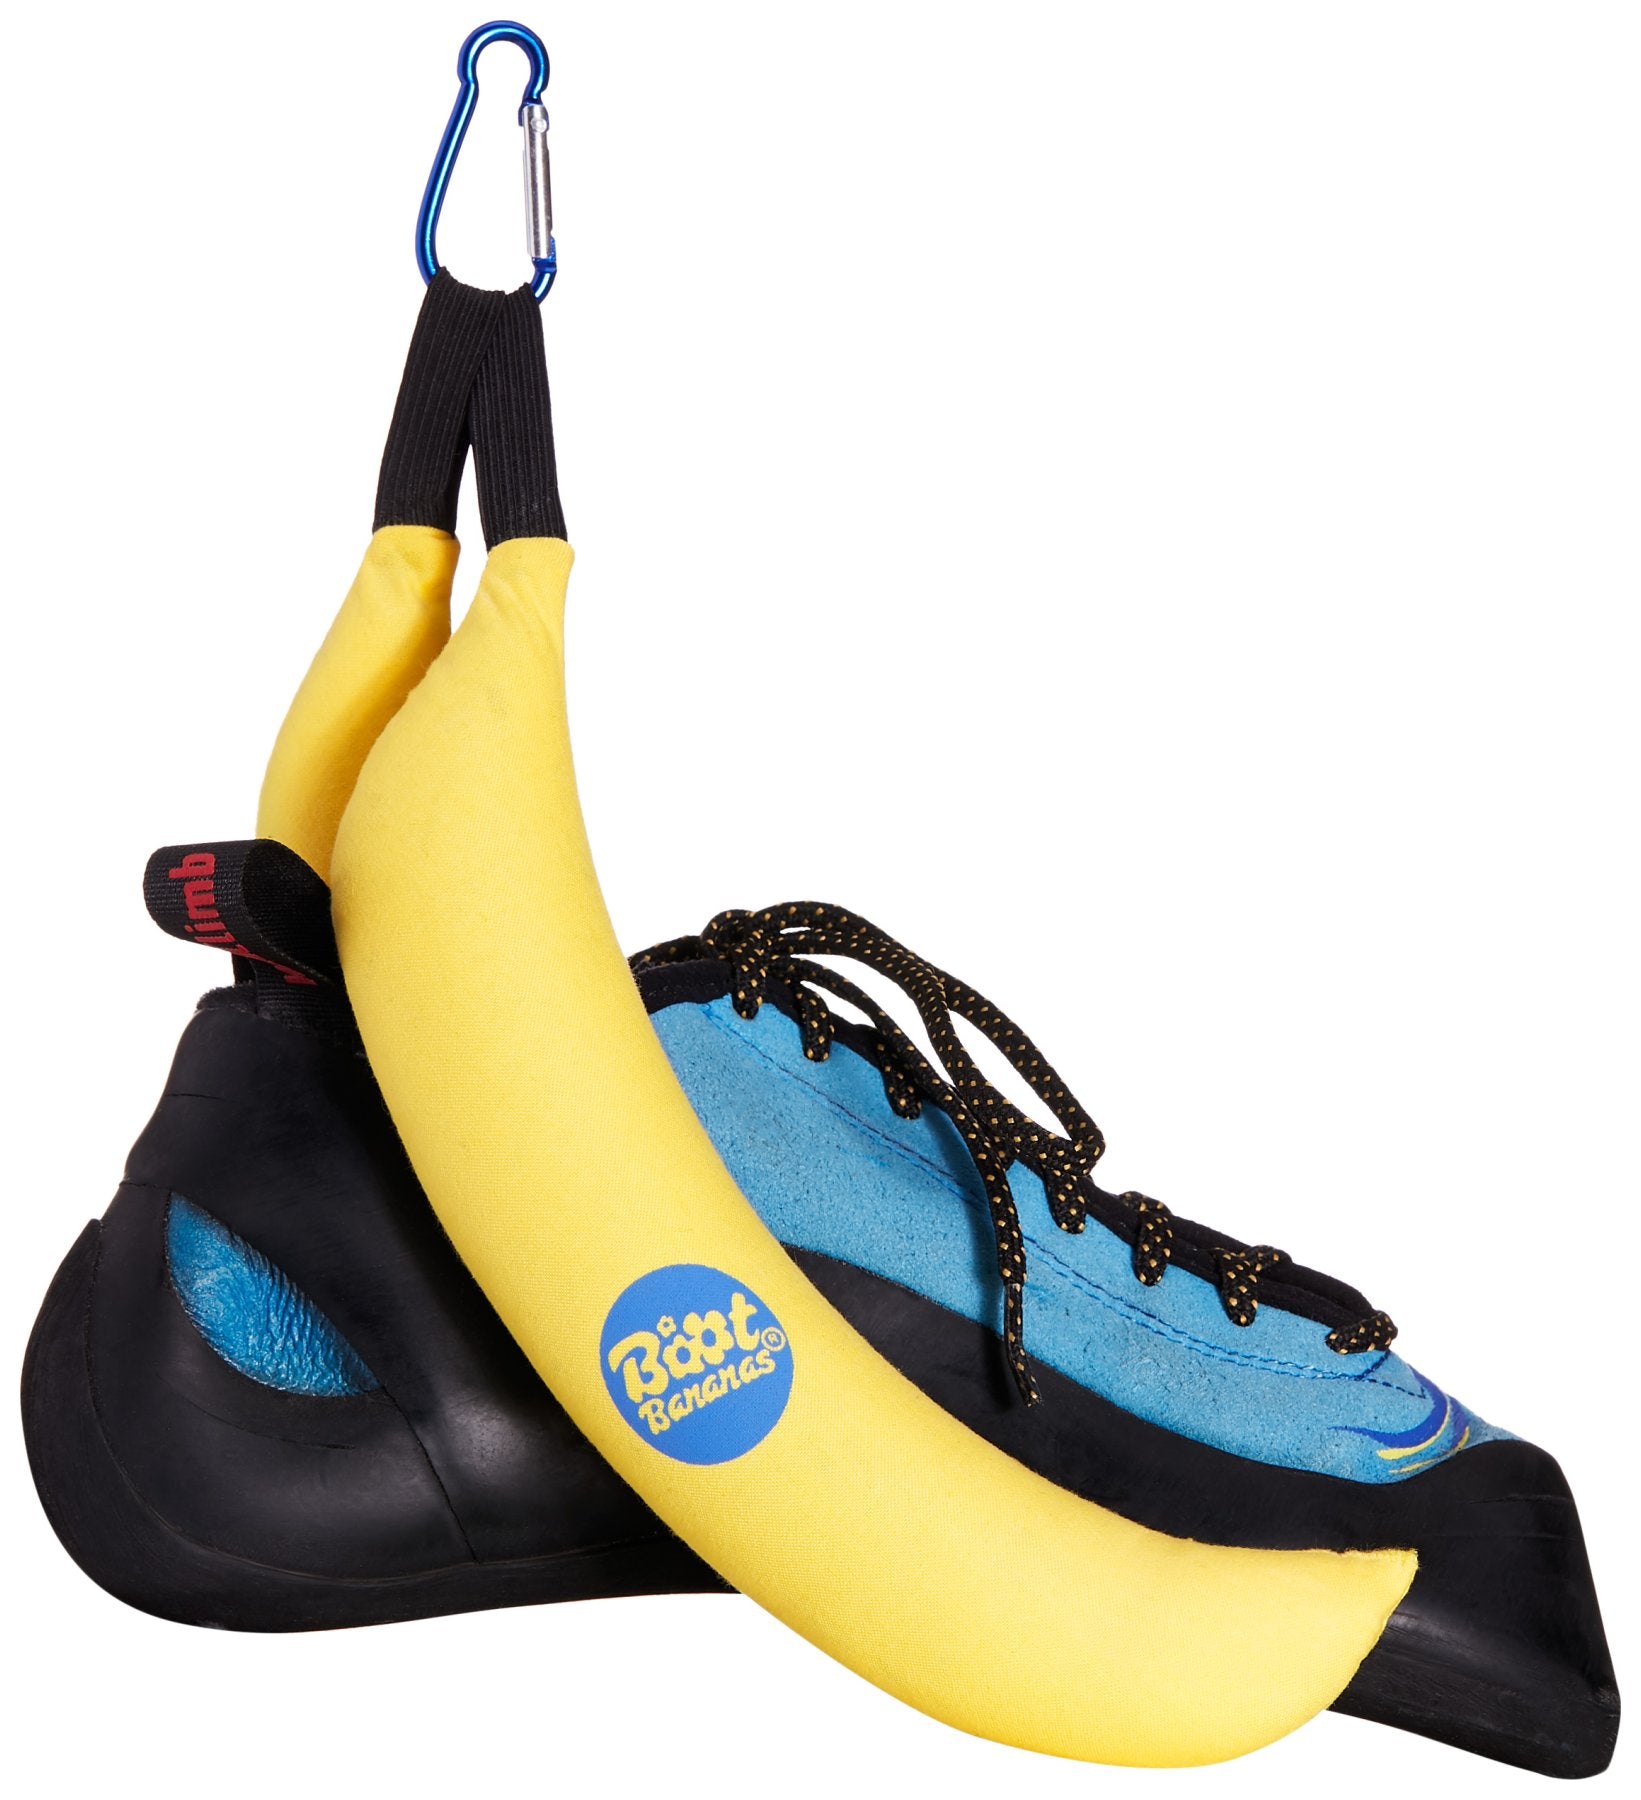 Boot Bananas (Deodorisers)